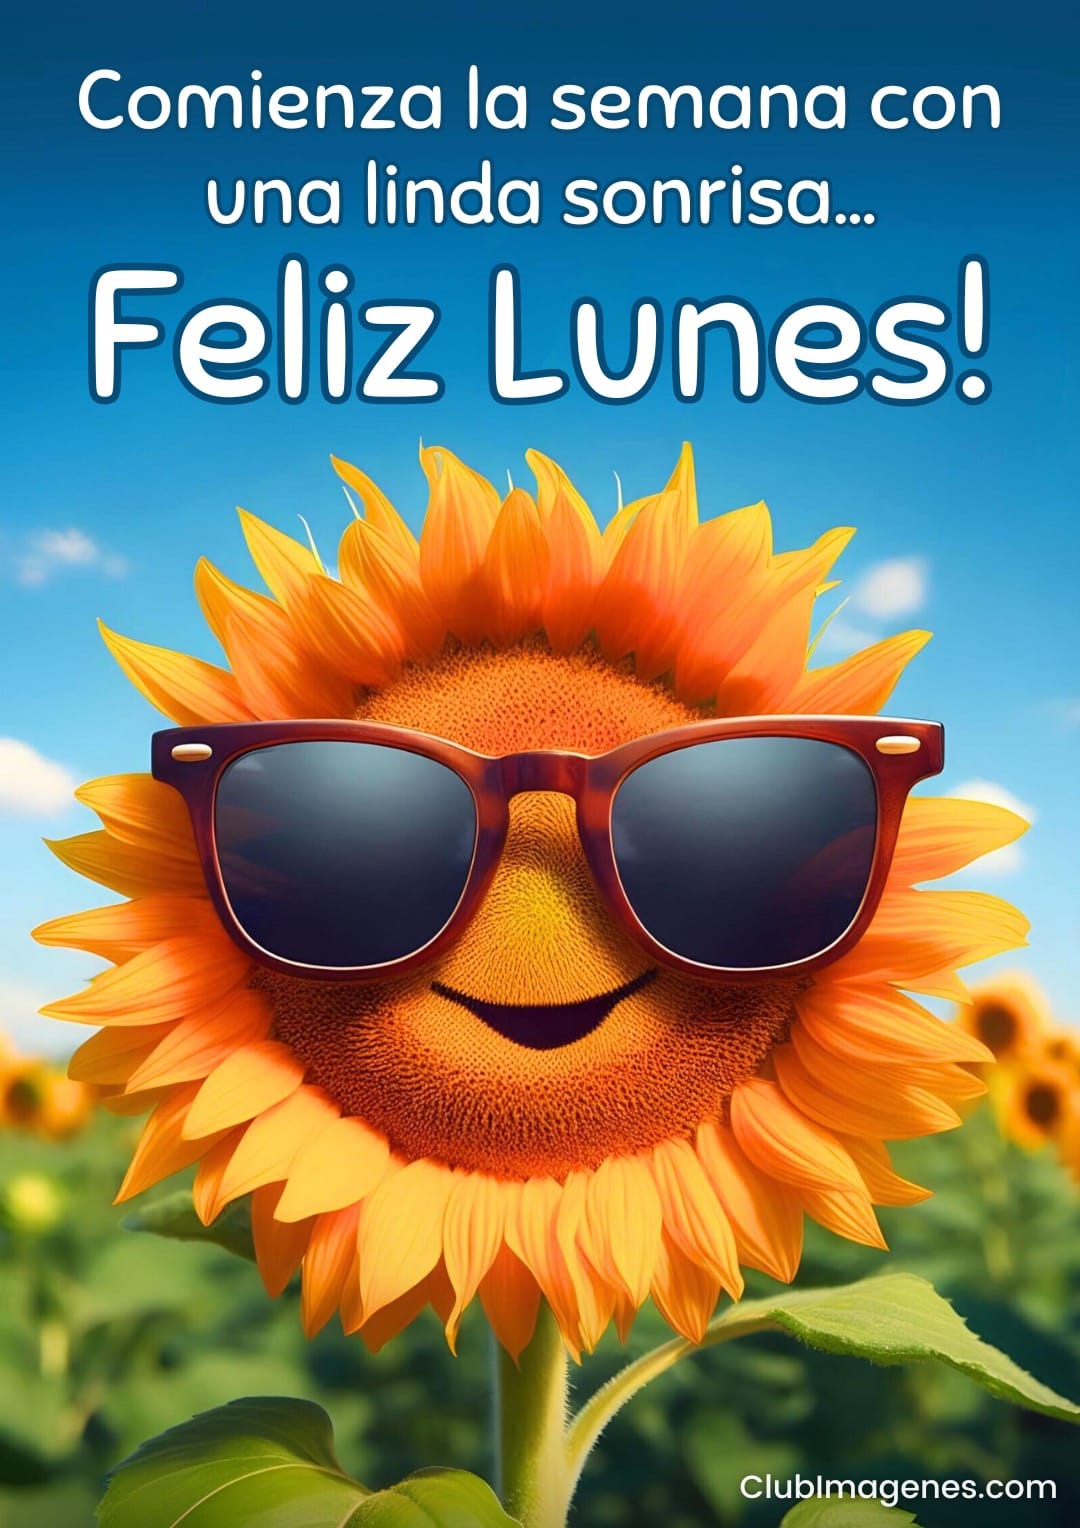 Un girasol con gafas de sol, sonriendo bajo un cielo azul, desea un alegre inicio de semana